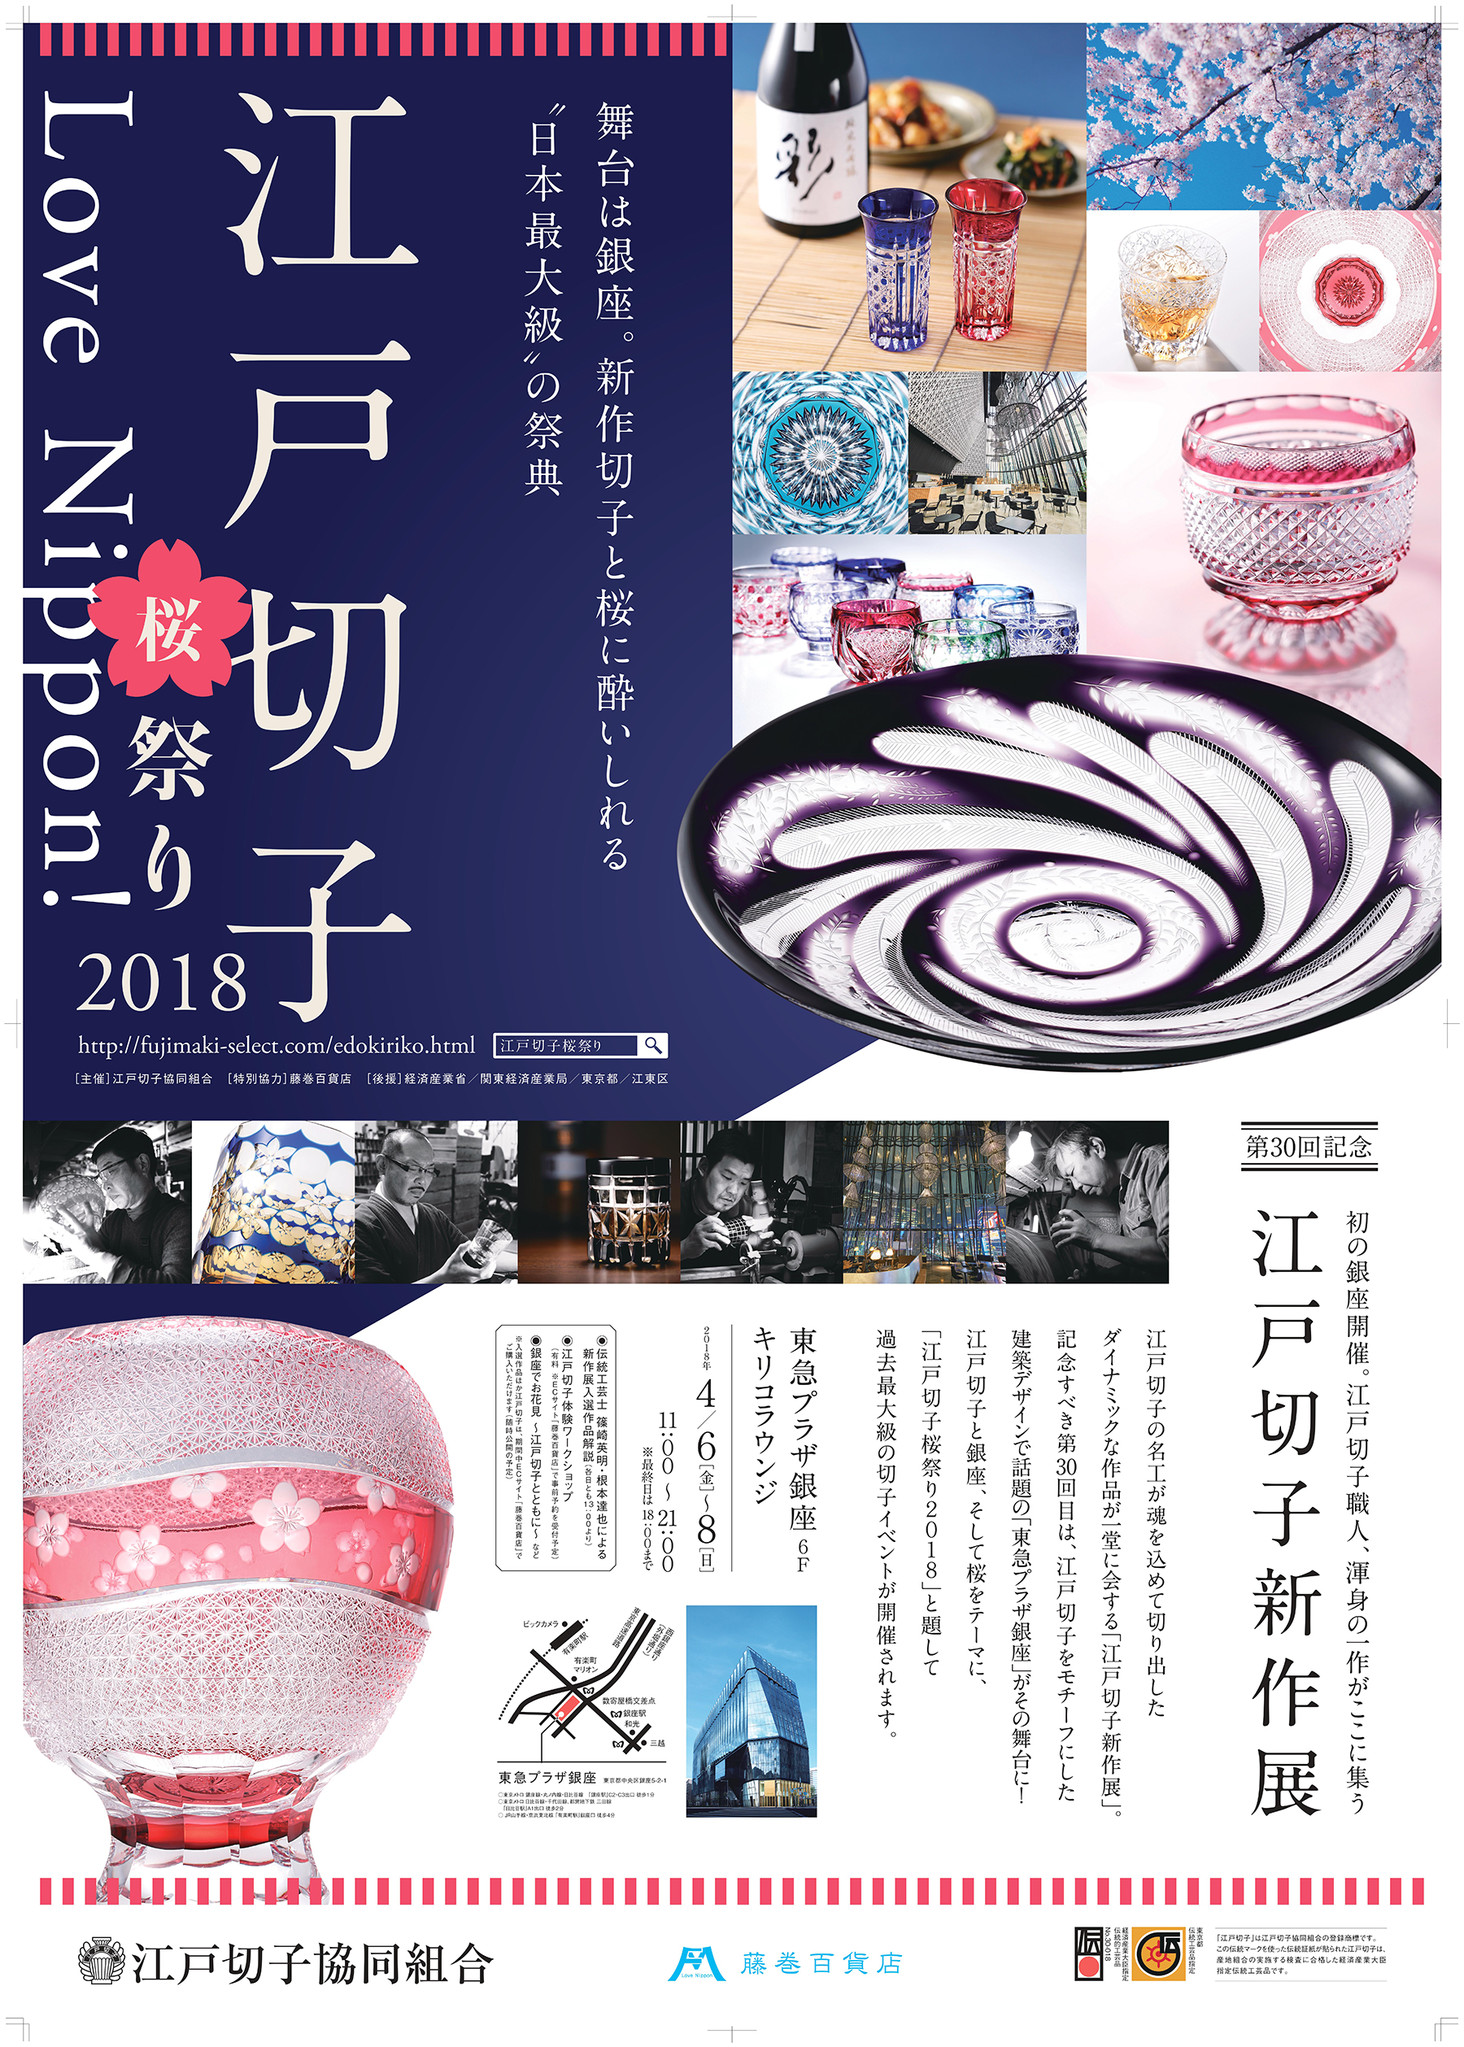 日本最大級 の祭典 Love Nippon 江戸切子桜祭り18 第30回 江戸切子新作展 株式会社 Caramoのプレスリリース